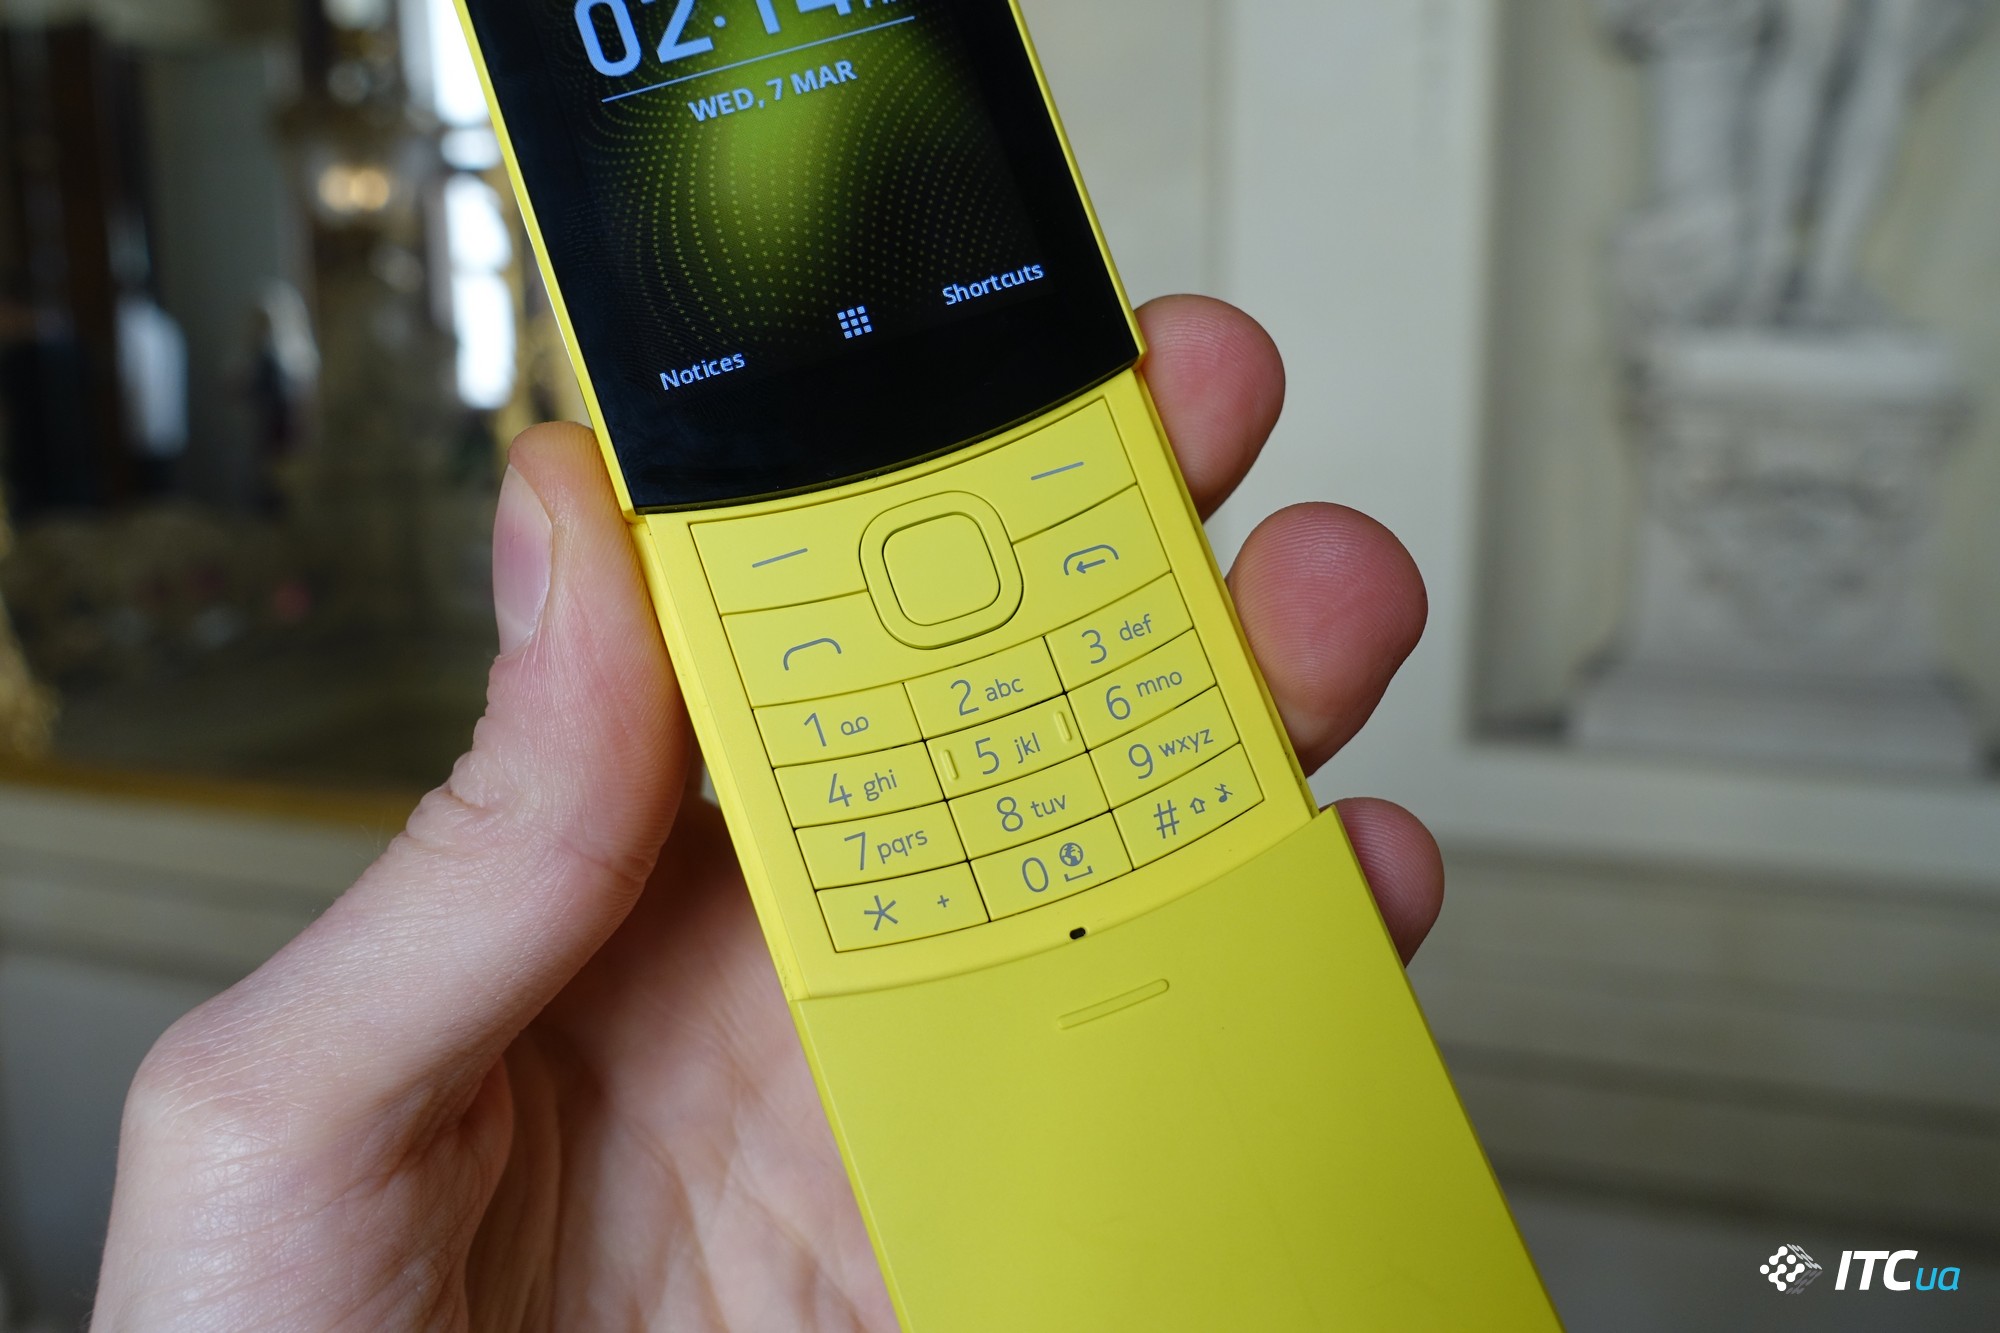 Первый взгляд на «банан» Nokia 8110 4G и Nokia 1